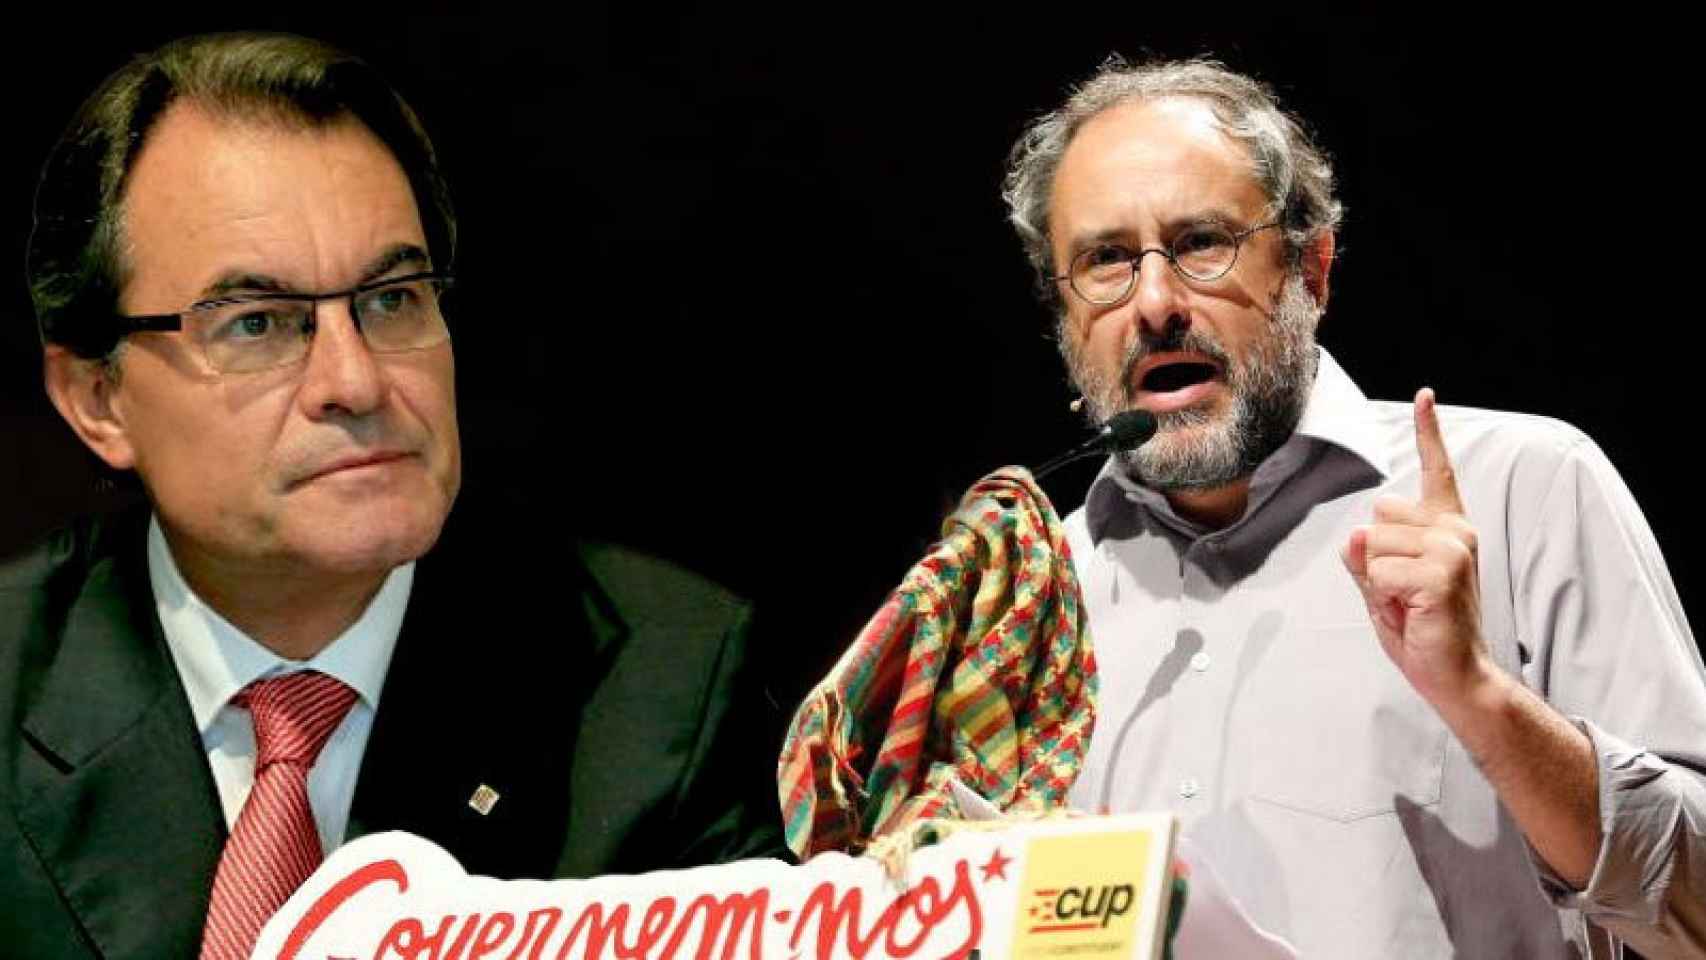 El presidente de la Generalitat y de CDC, Artur Mas, y el cabeza de lista de la CUP el 27S, Antonio Baños / FOTOMONTAJE DE CG